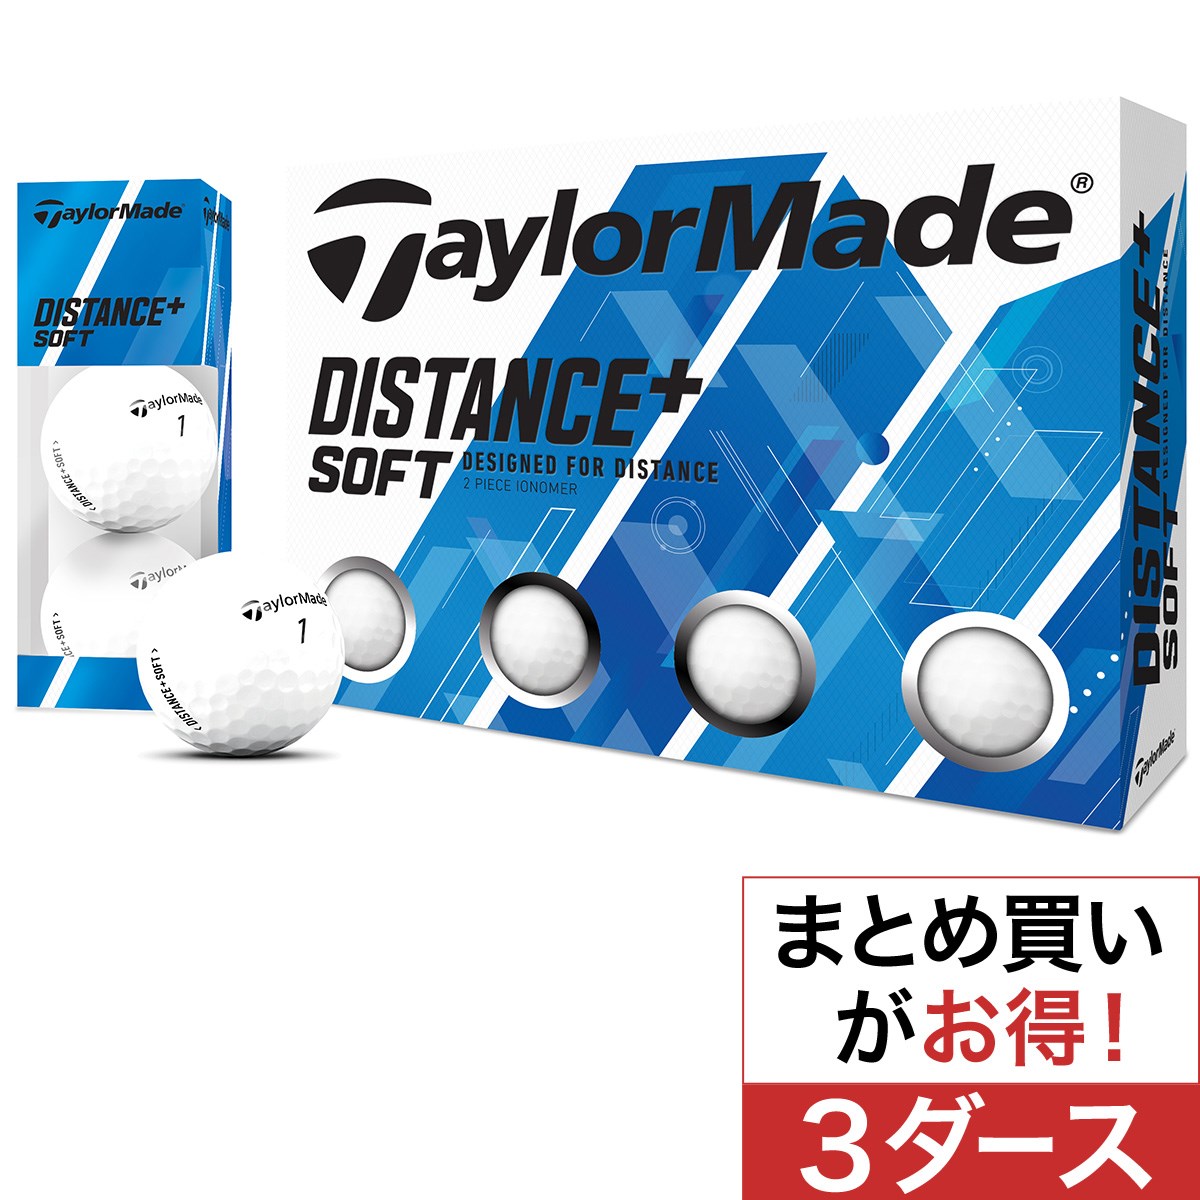 テーラーメイド(Taylor Made) Distance+Soft ボール 3ダースセット 